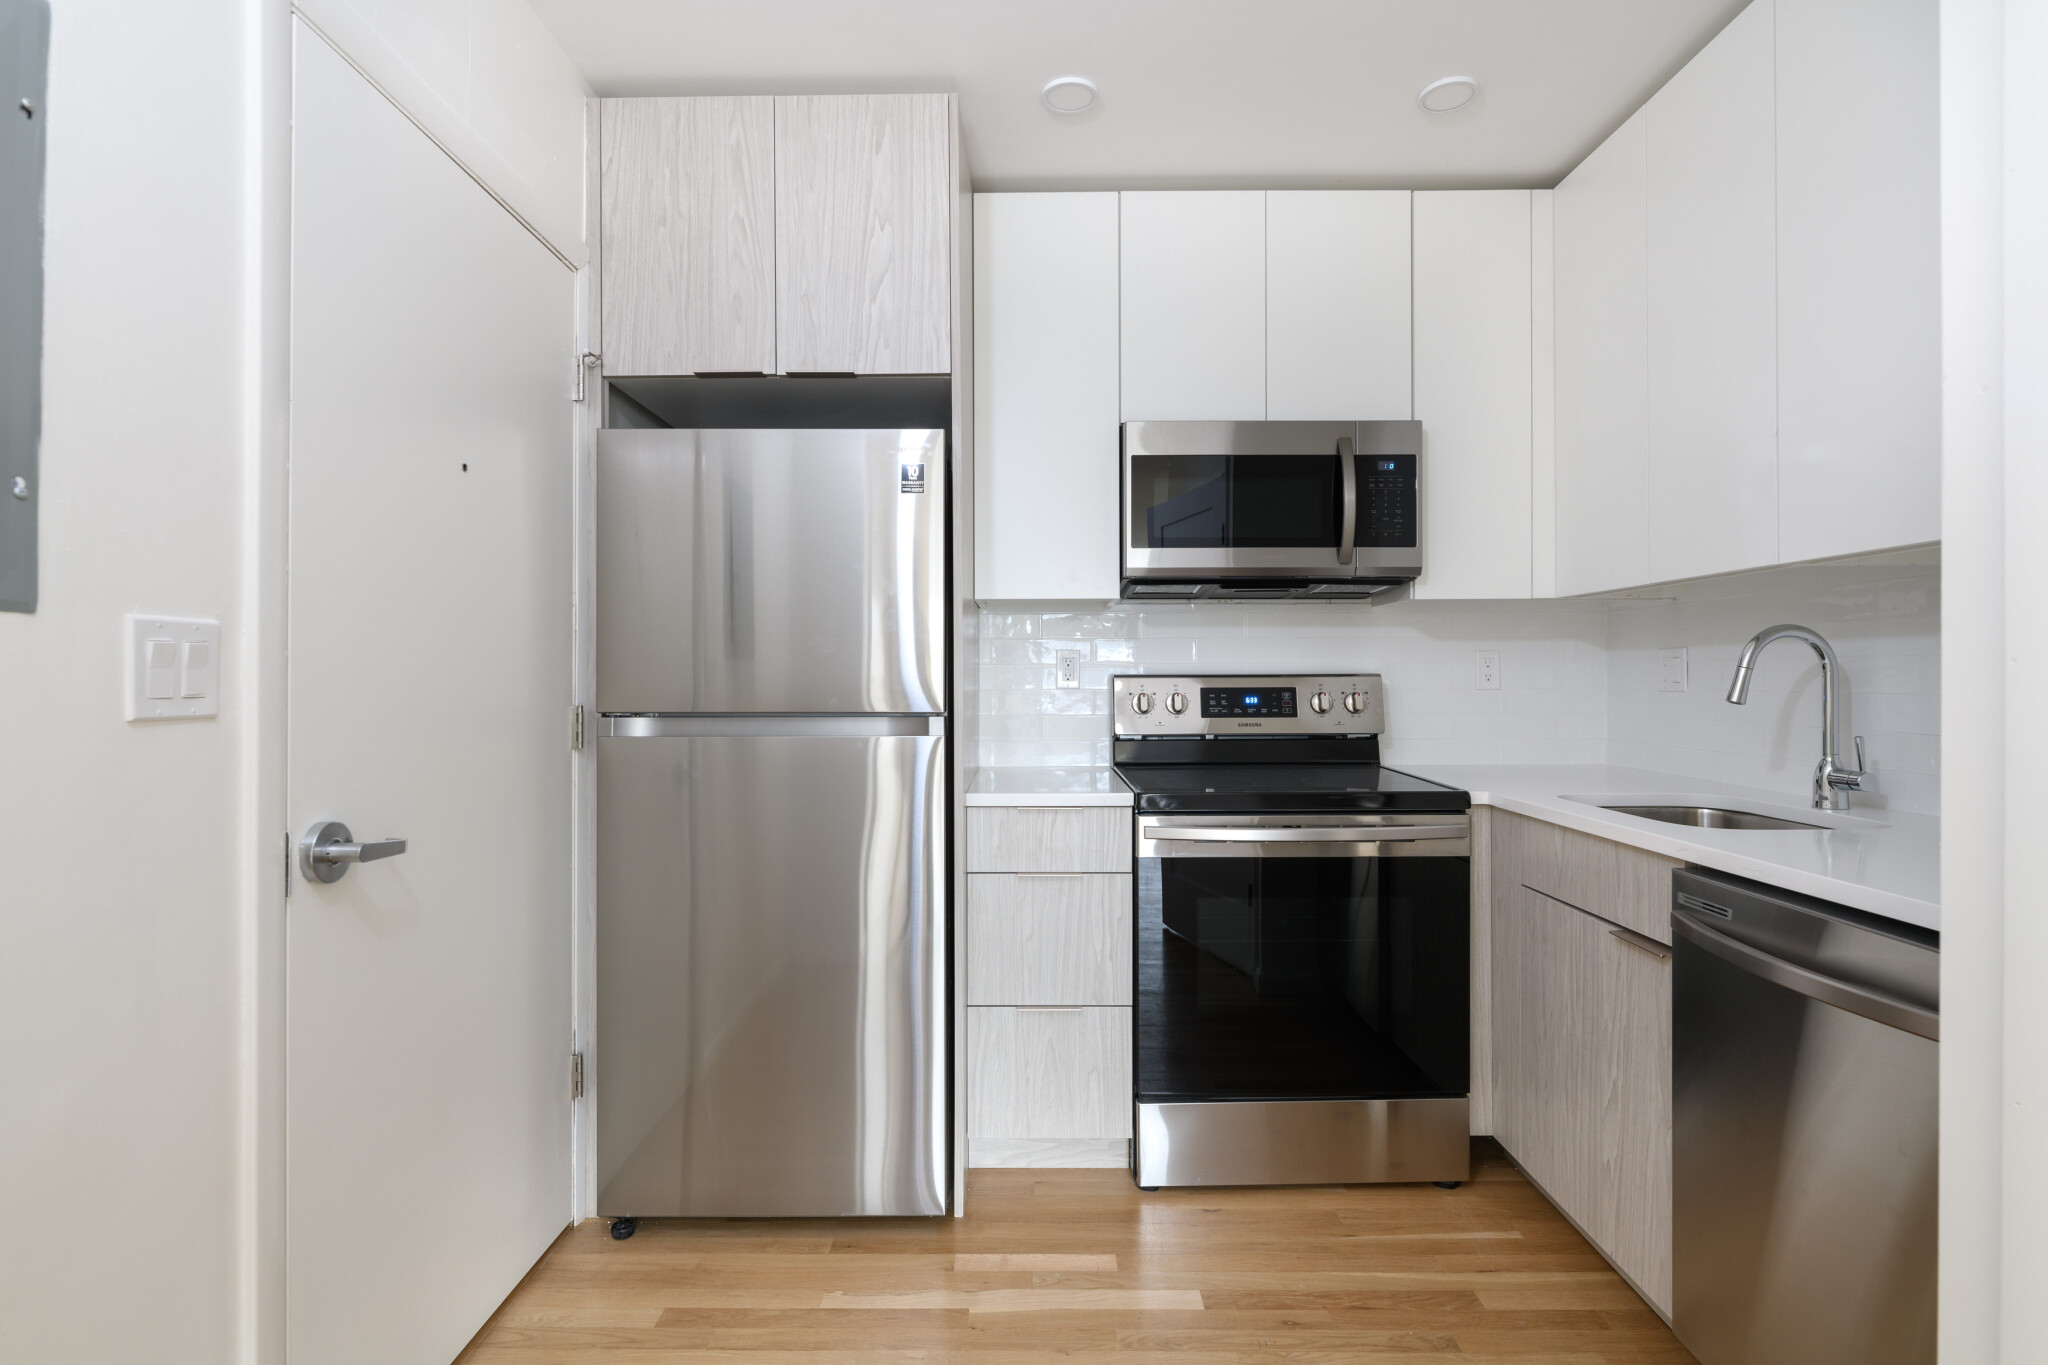 Photos of apartment on Washington St.,Boston MA 02130